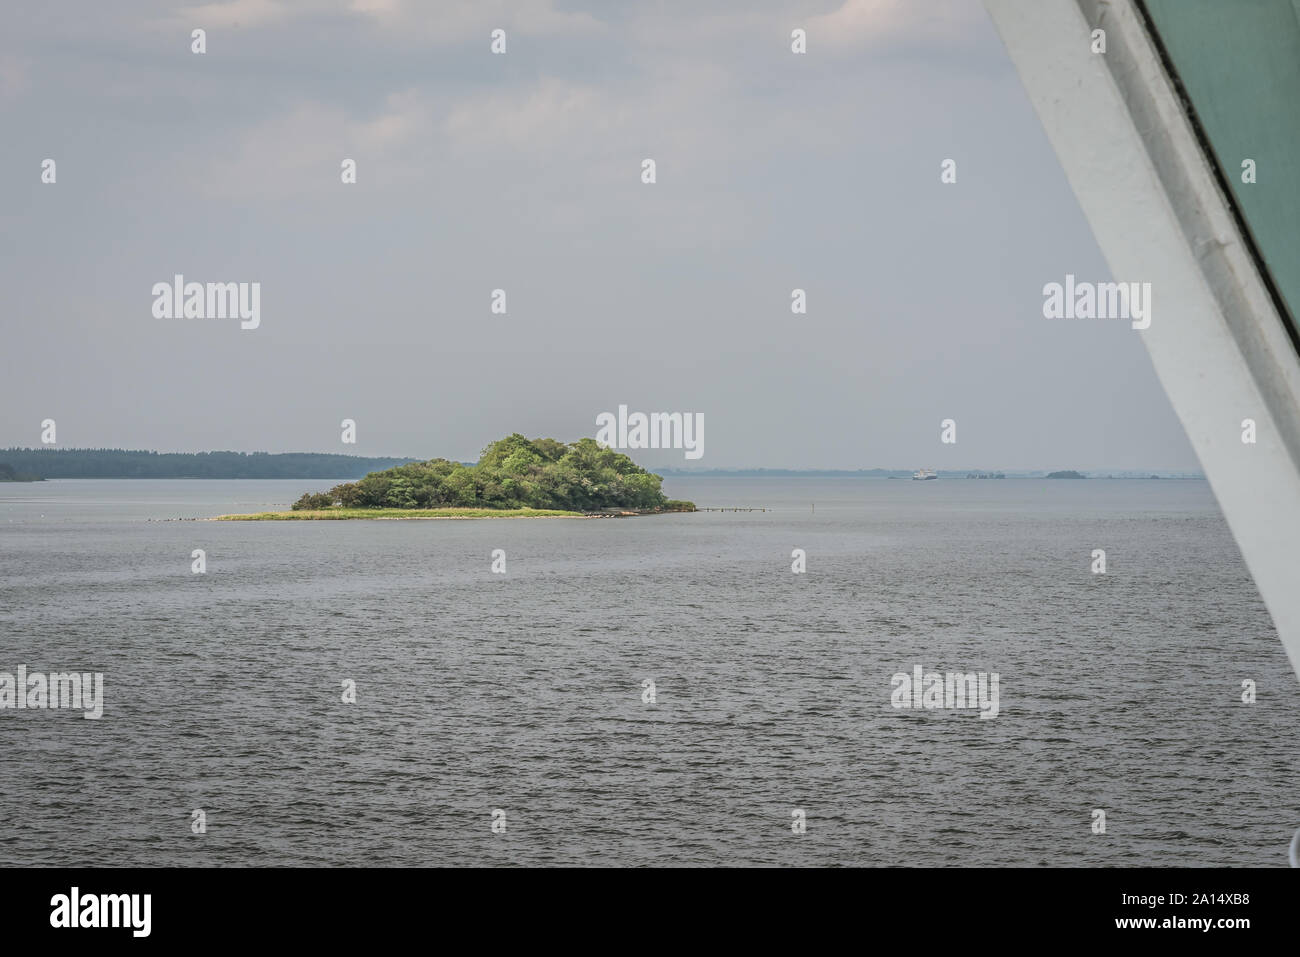 Eine kleine Insel mit grünen Bäumen allein im Ozean, von einer Fähre Fenster, Svendborg, Dänemark, 13. Juli 2019 zu sehen Stockfoto